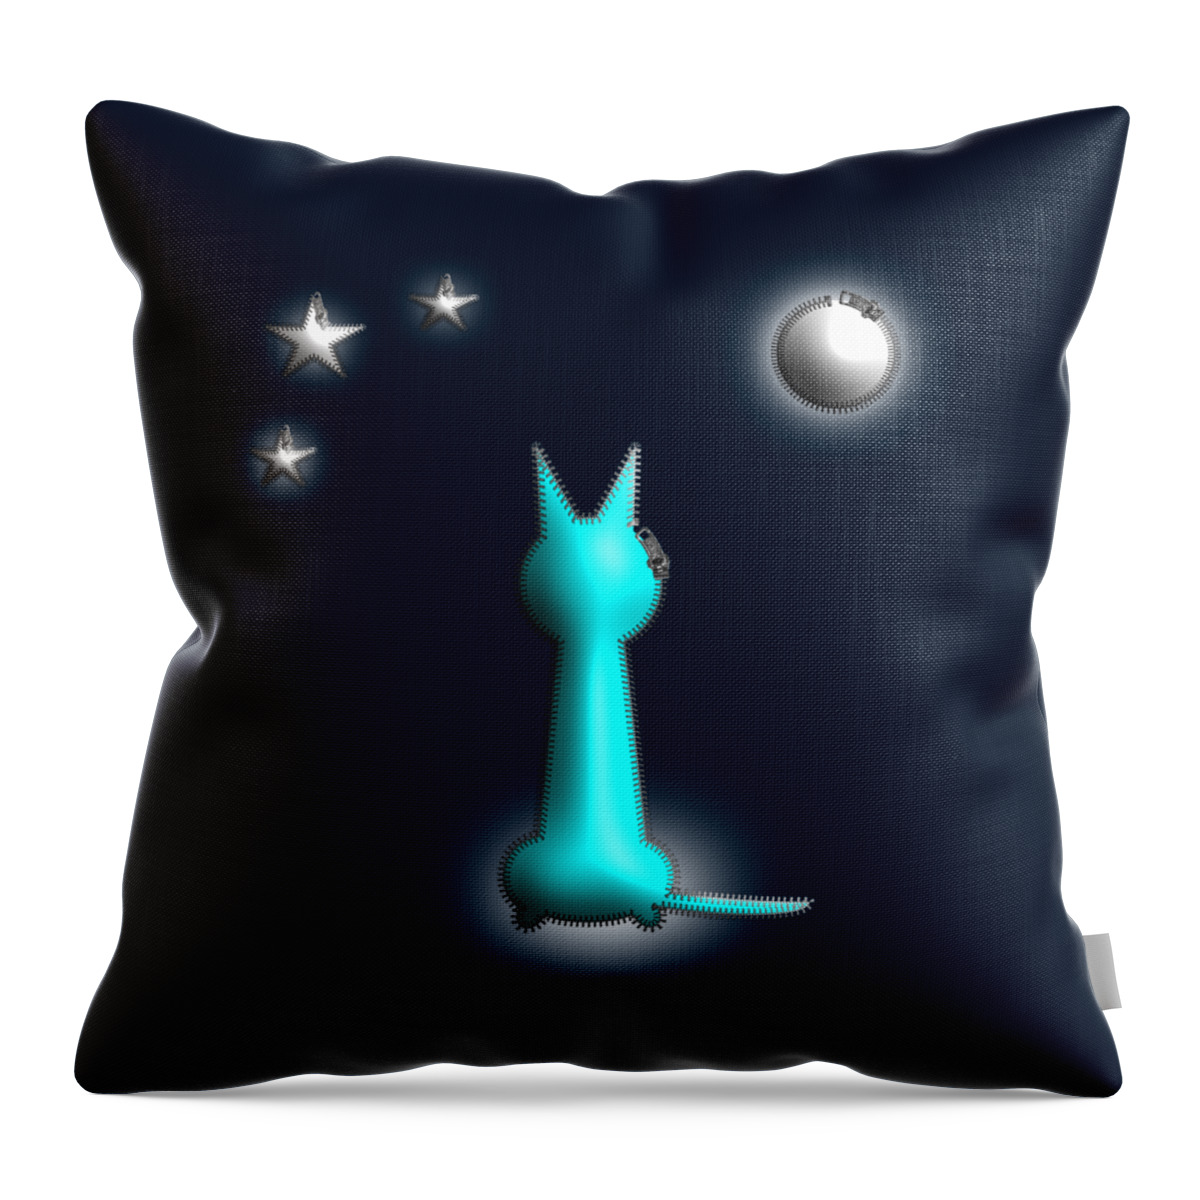 Cat Throw Pillow featuring the digital art Cat In the Moonlight Zip Design by Barefoot Bodeez Art